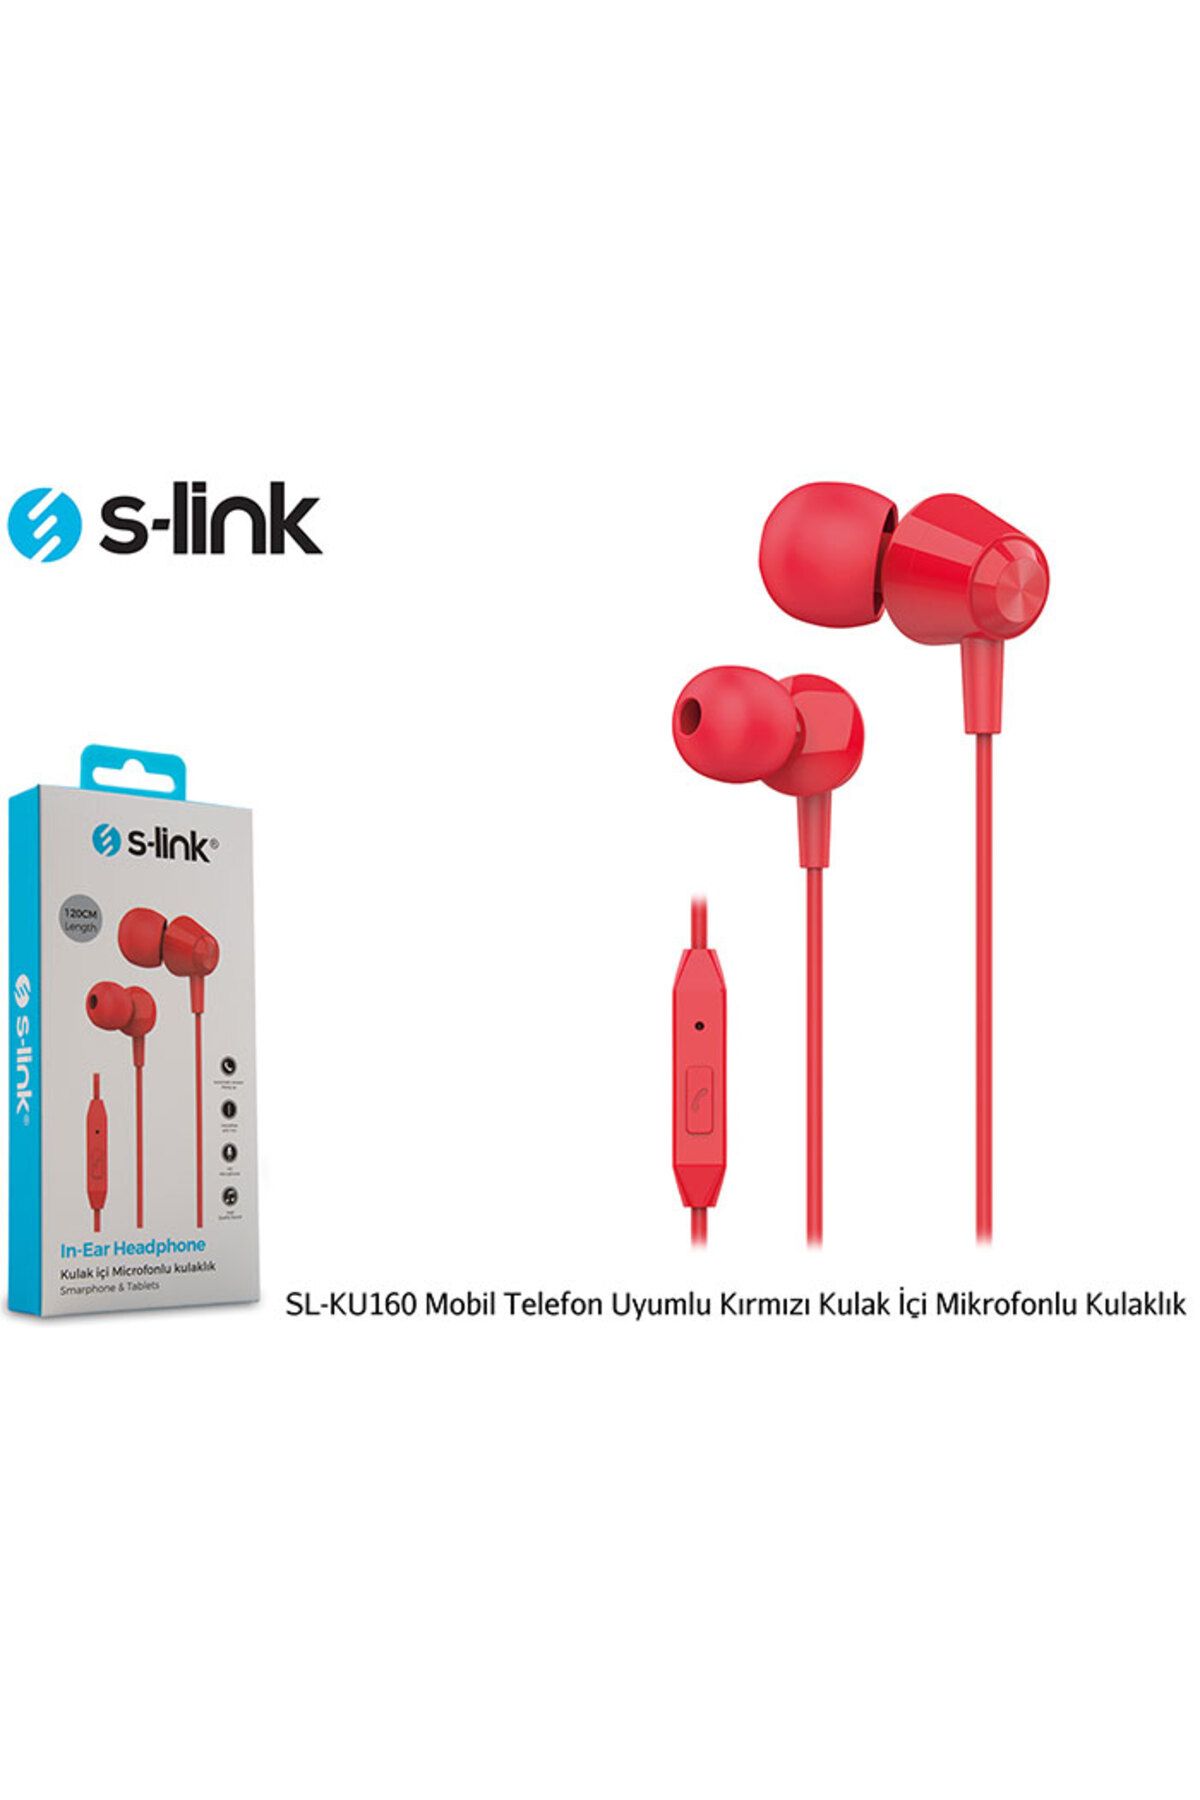 S-Link SL-KU160 Mobil Telefon Uyumlu Kırmızı Kulak İçi Mikrofonlu Kulaklık